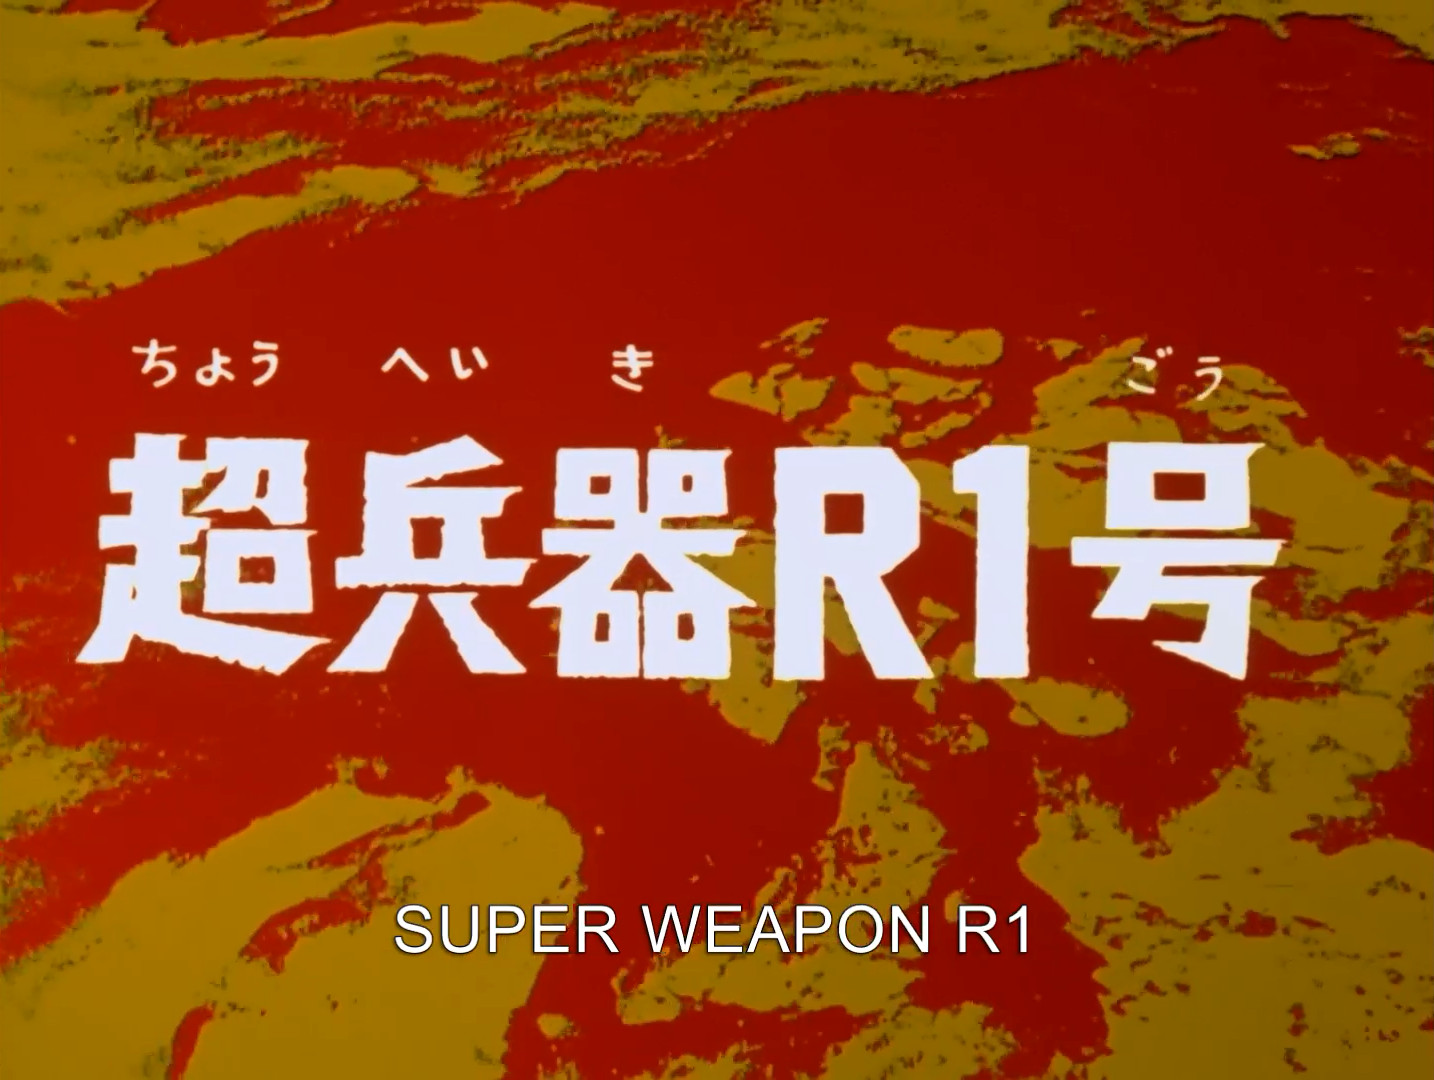 Super Weapon R 1 Ultraman Wiki Fandom